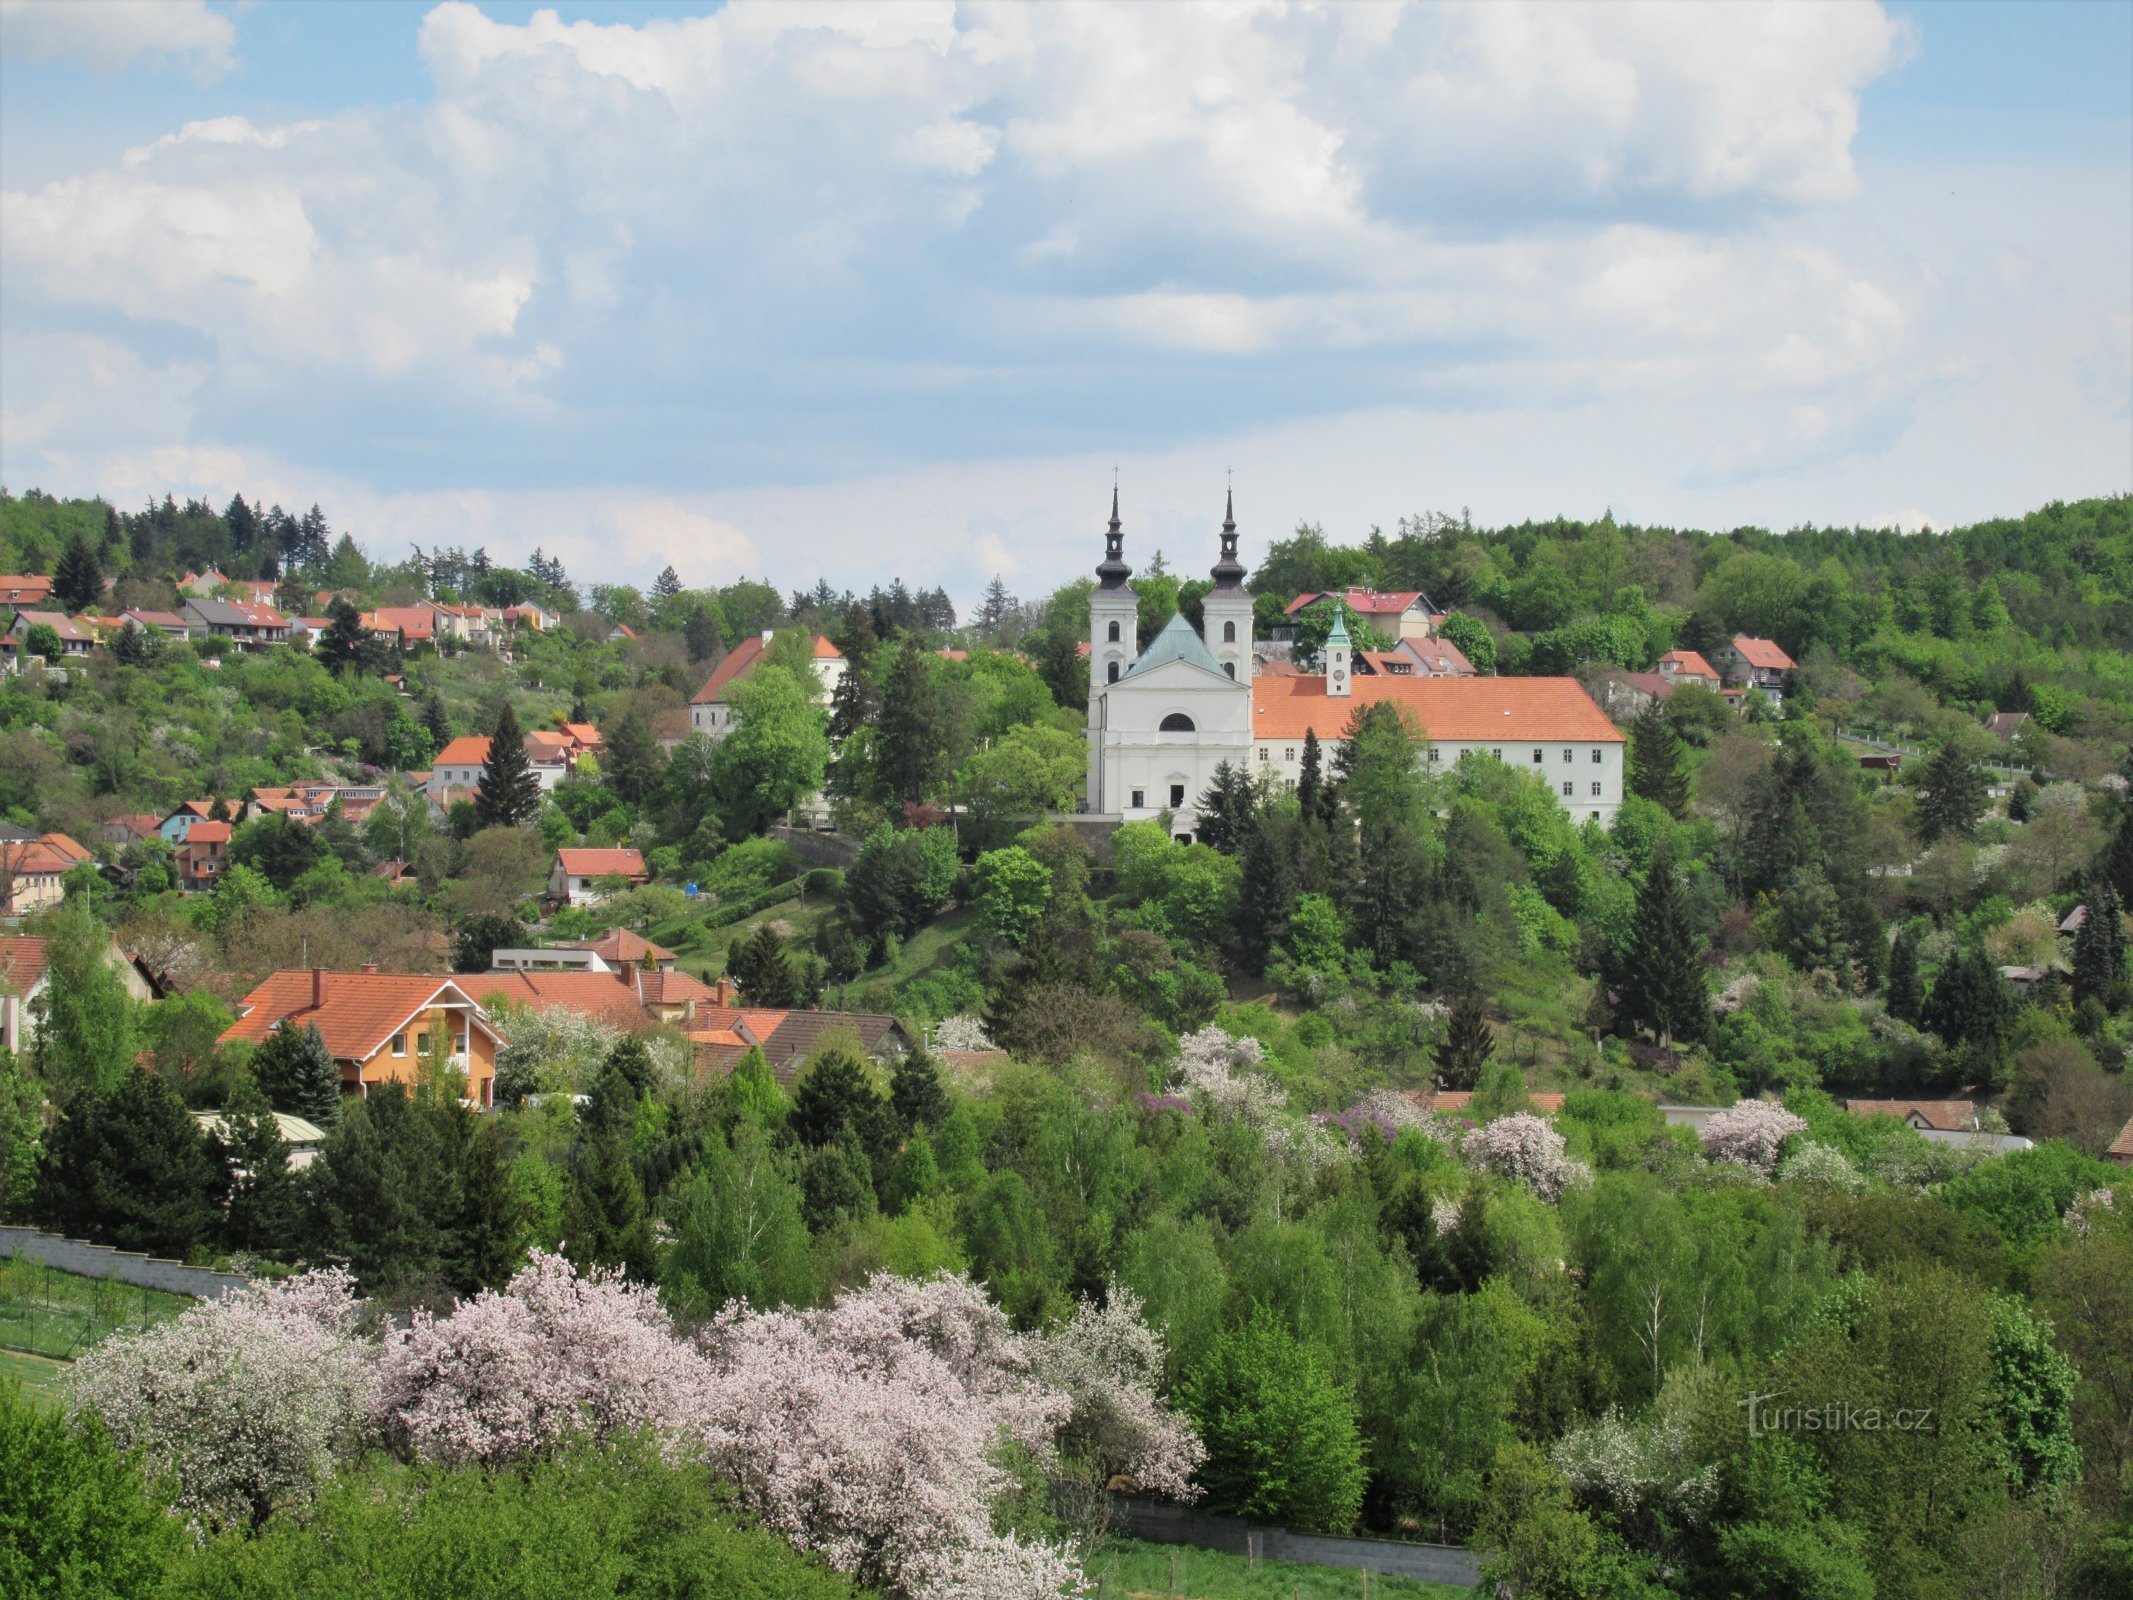 Vranov near Brno - view of the village